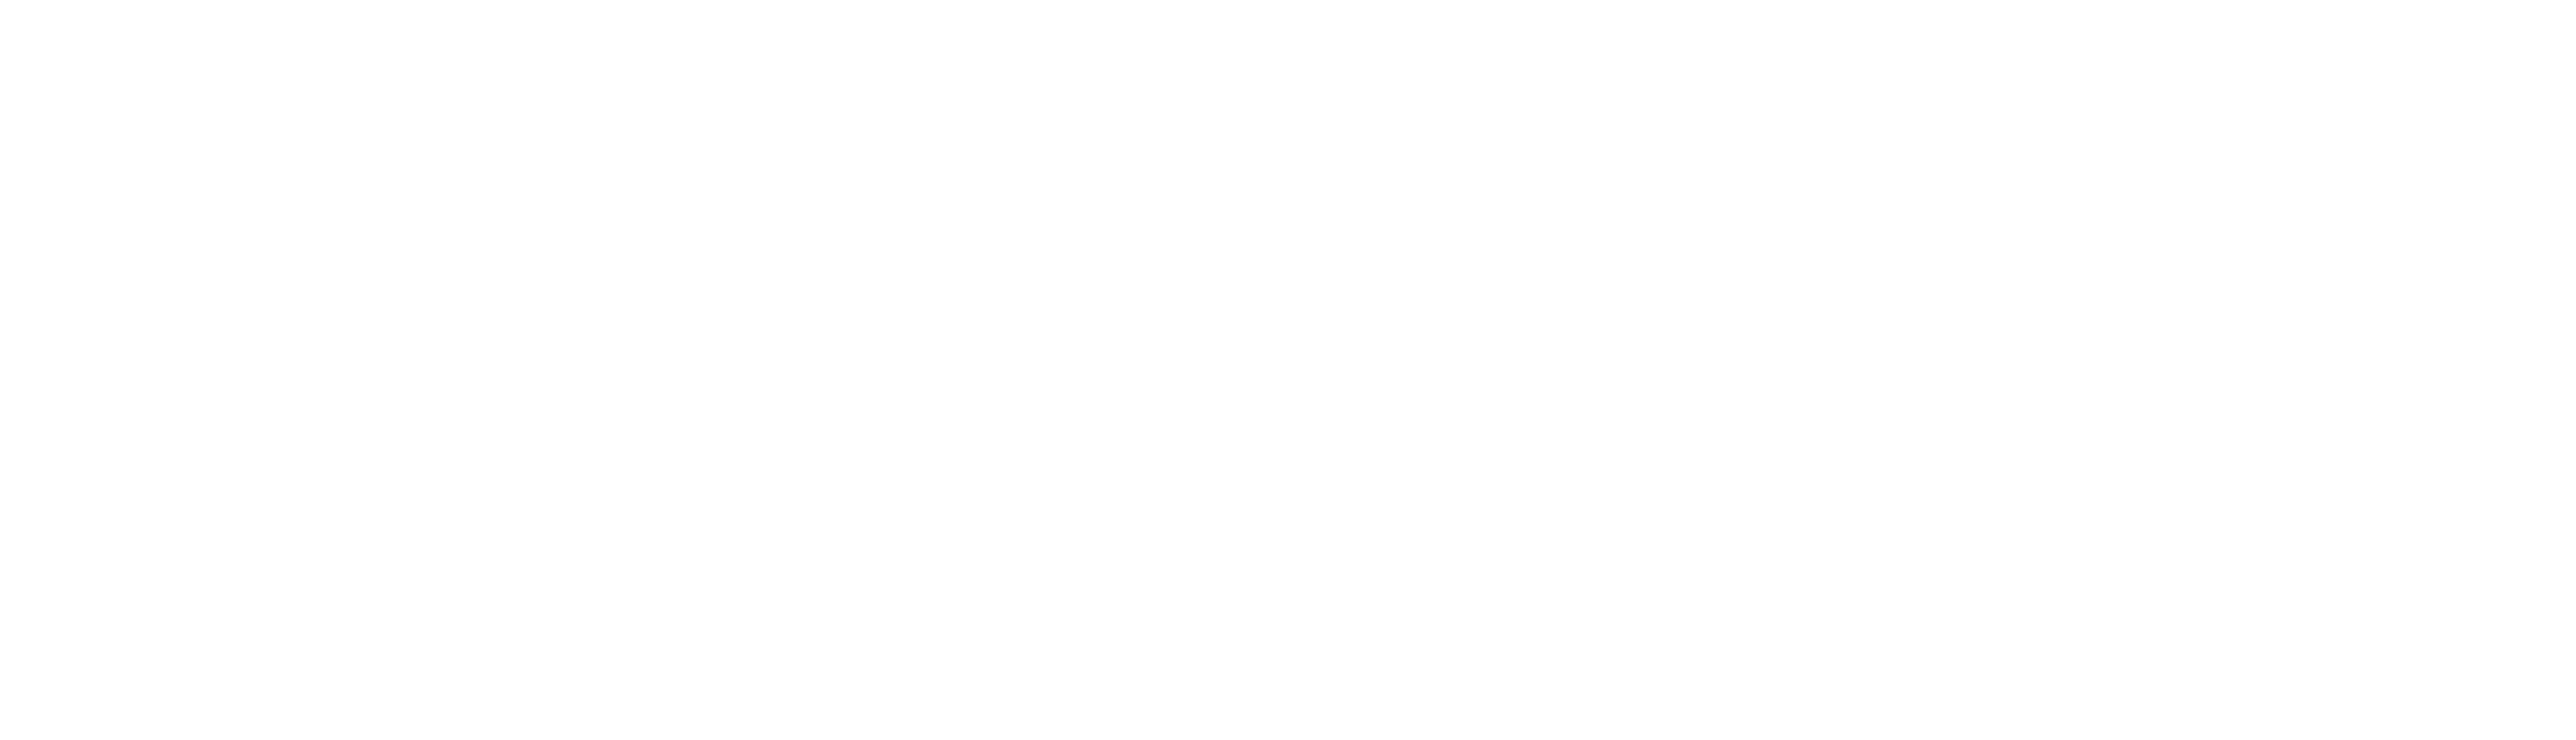 vital-air-energy-left-white-logo